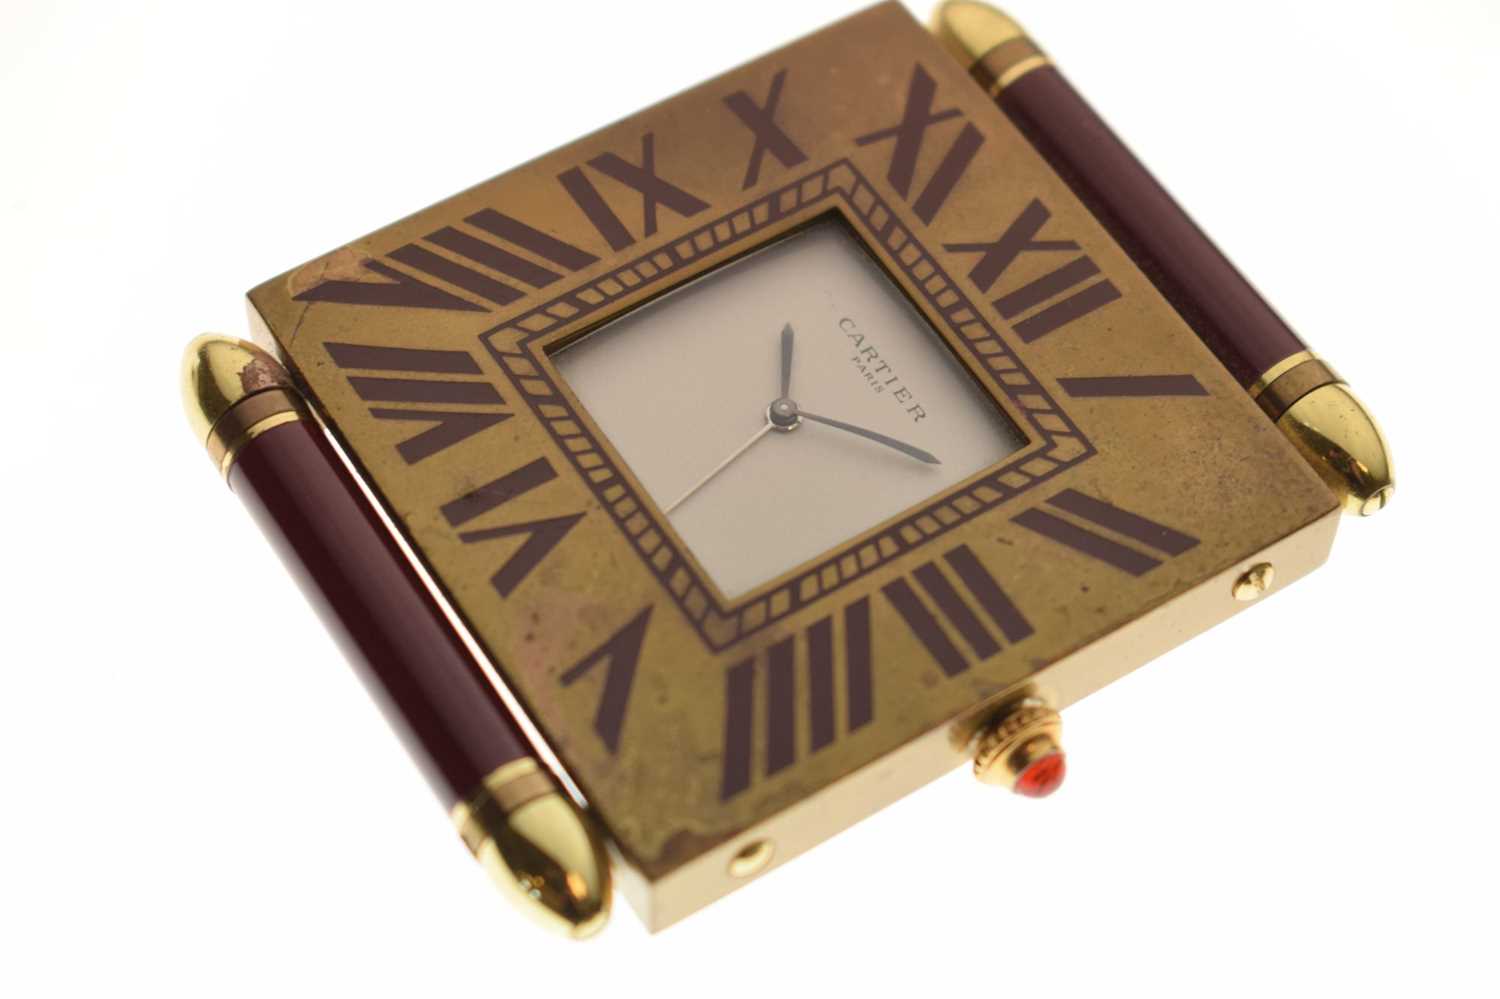 Cartier - Pendulettes De Voyage quartz travel timepiece - Image 2 of 8